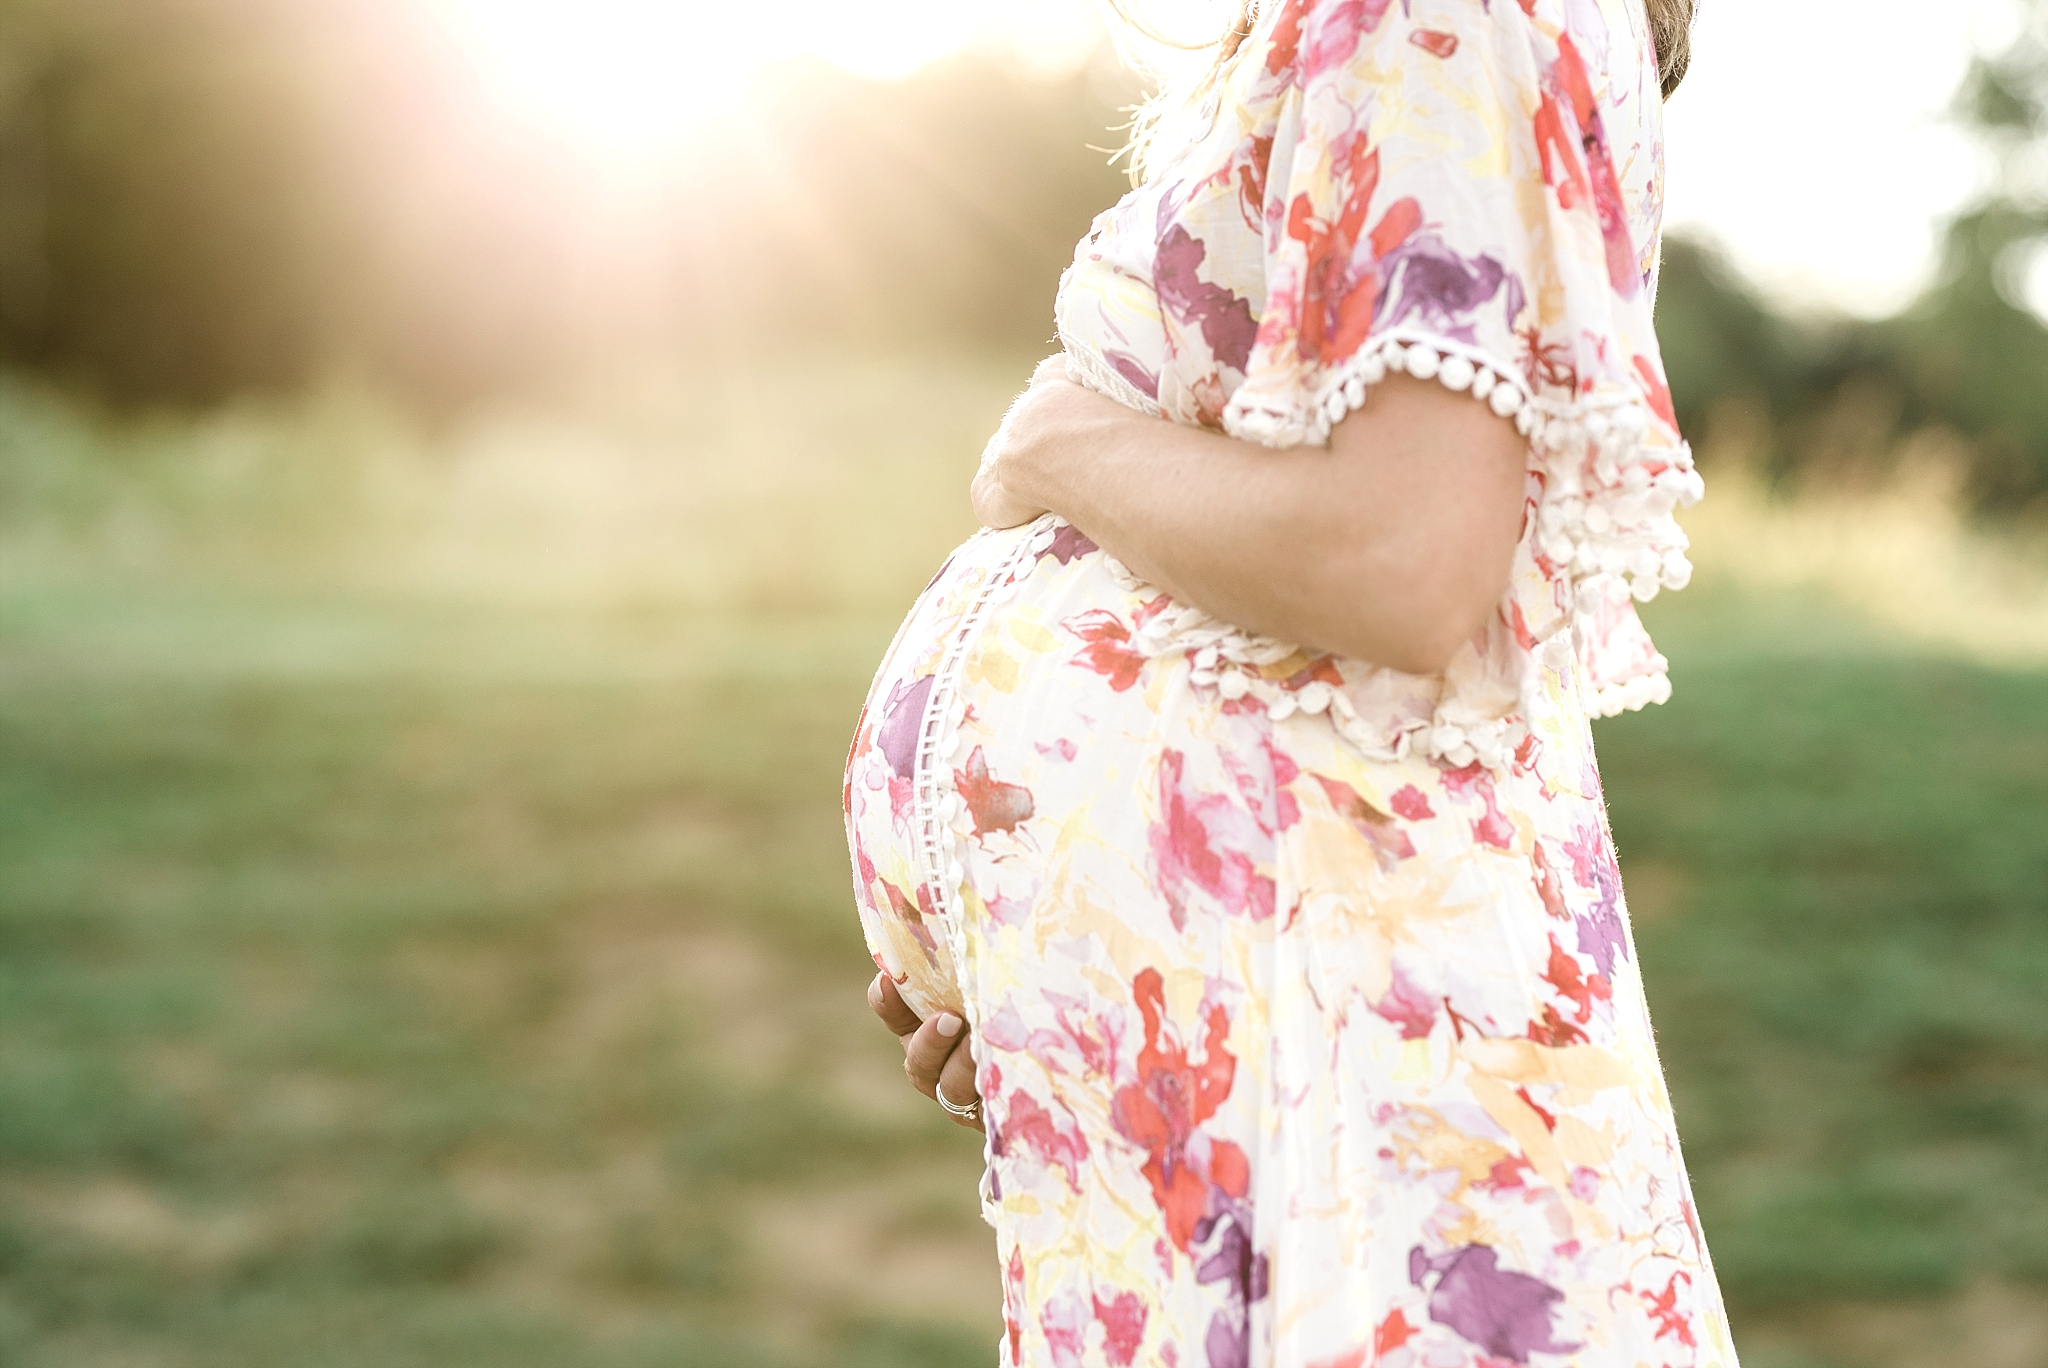 flowered dress Nashville maternity session sunlight